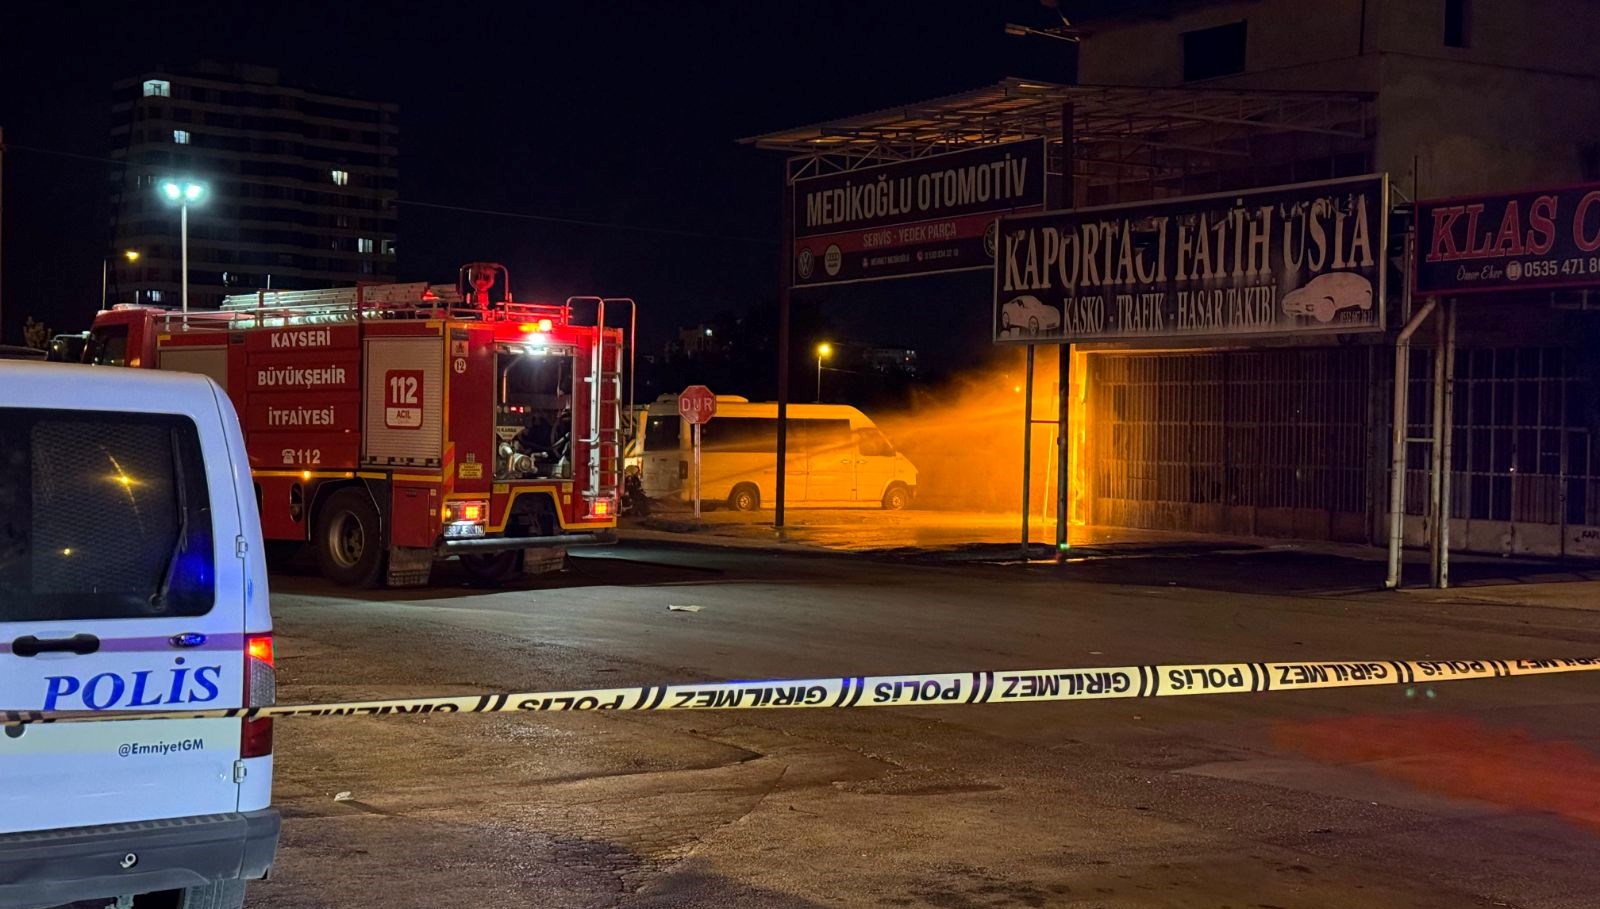 Kayseri’de doğalgaz borusundaki patlamanın ardından yangın çıktı